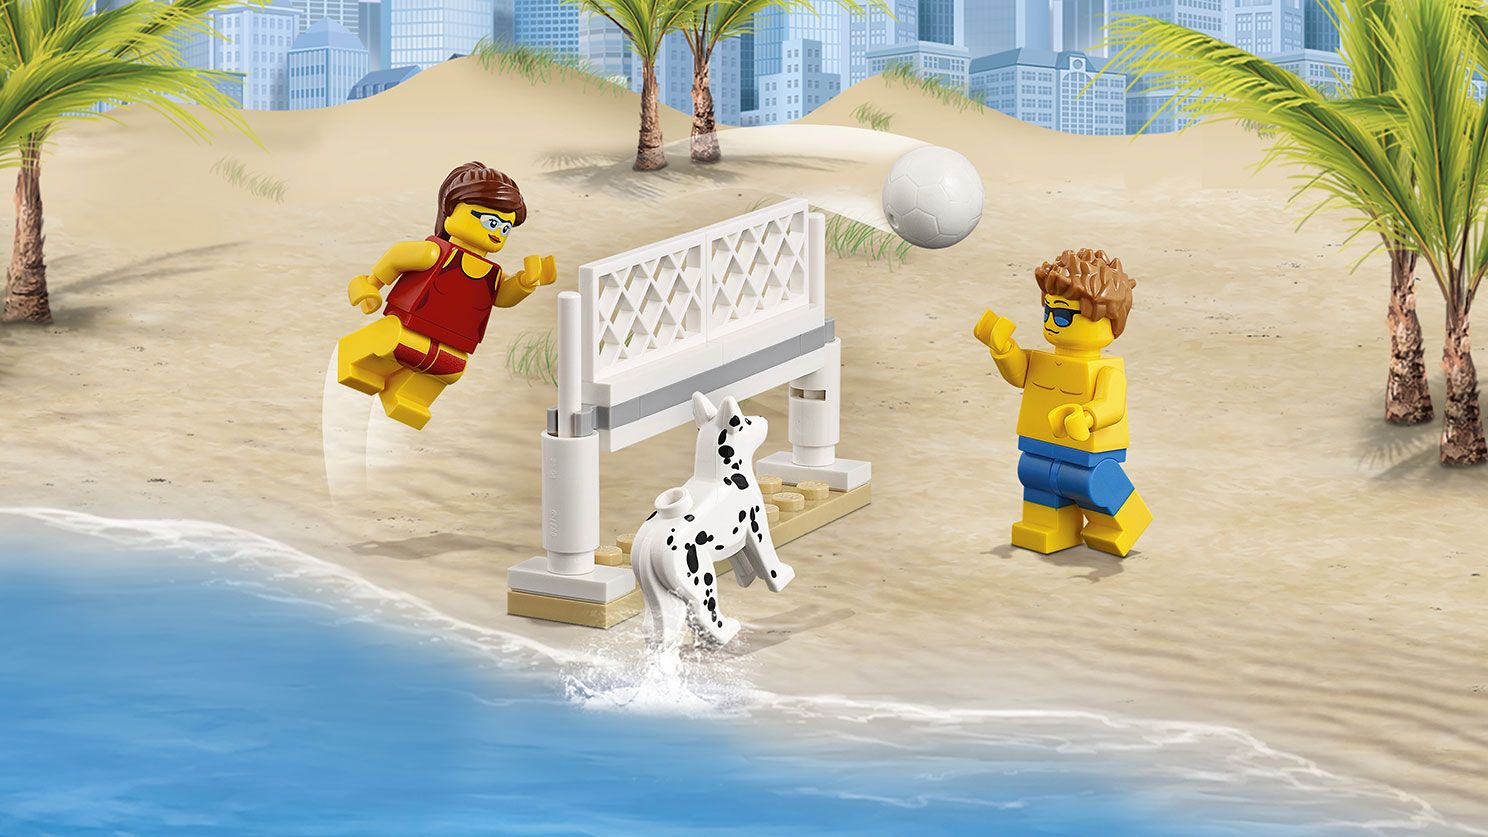 LEGO City 60153 Stadtbewohner – Ein Tag am Strand LEGO_60153_WEB_SEC02_1488.jpg